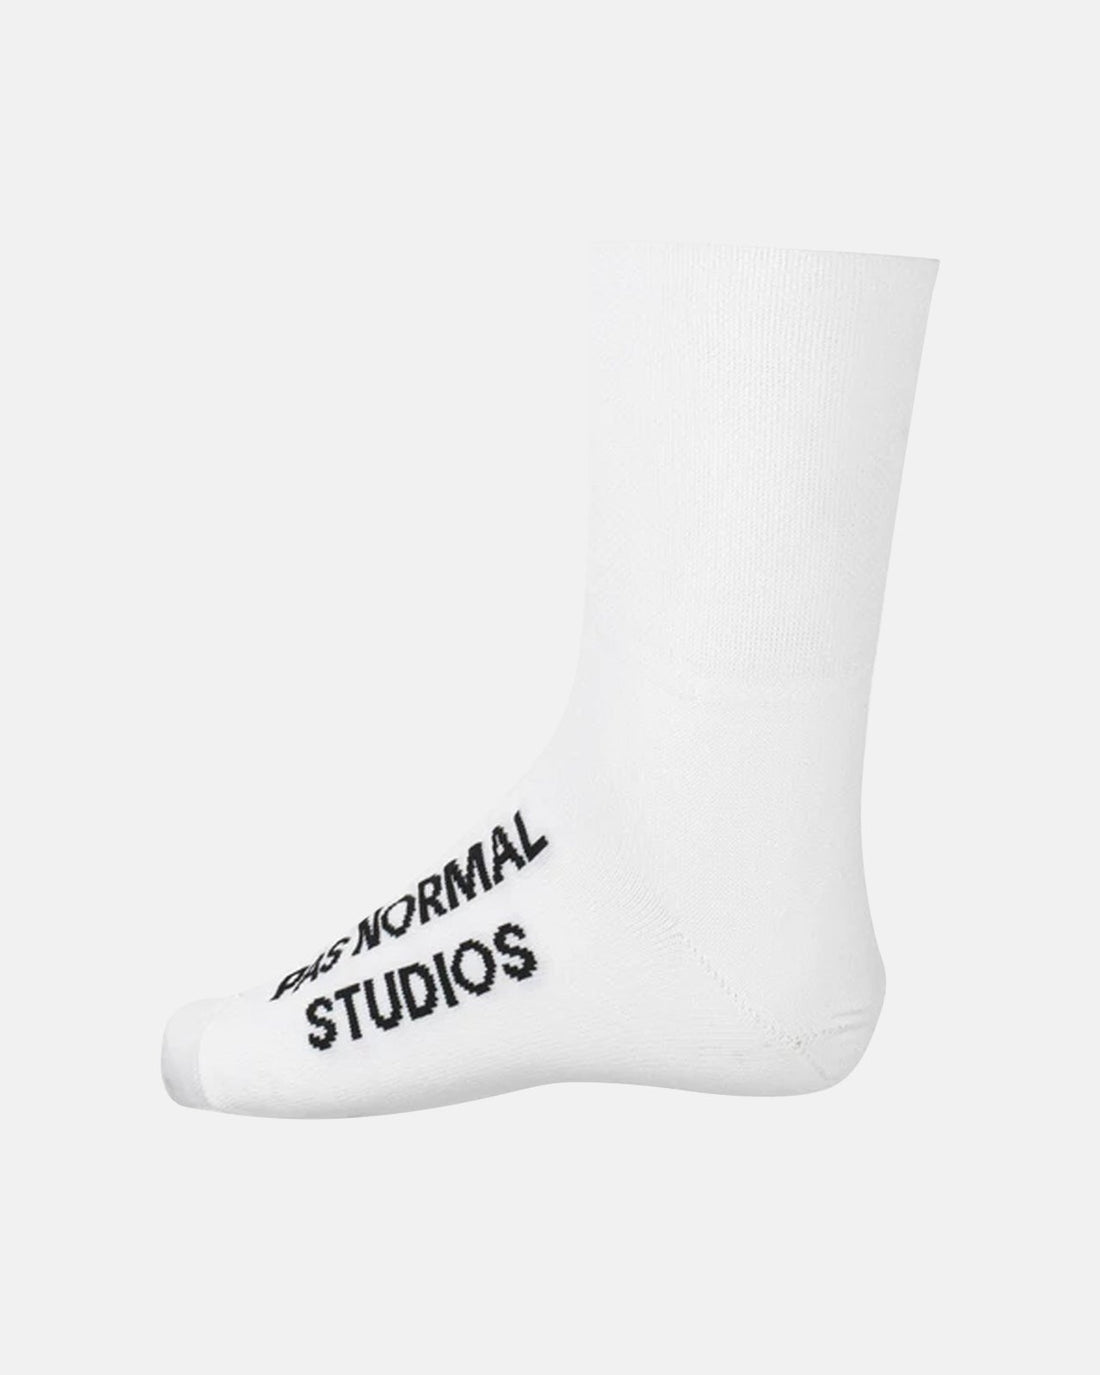 Logo Oversocks - White - Pas Normal Studios